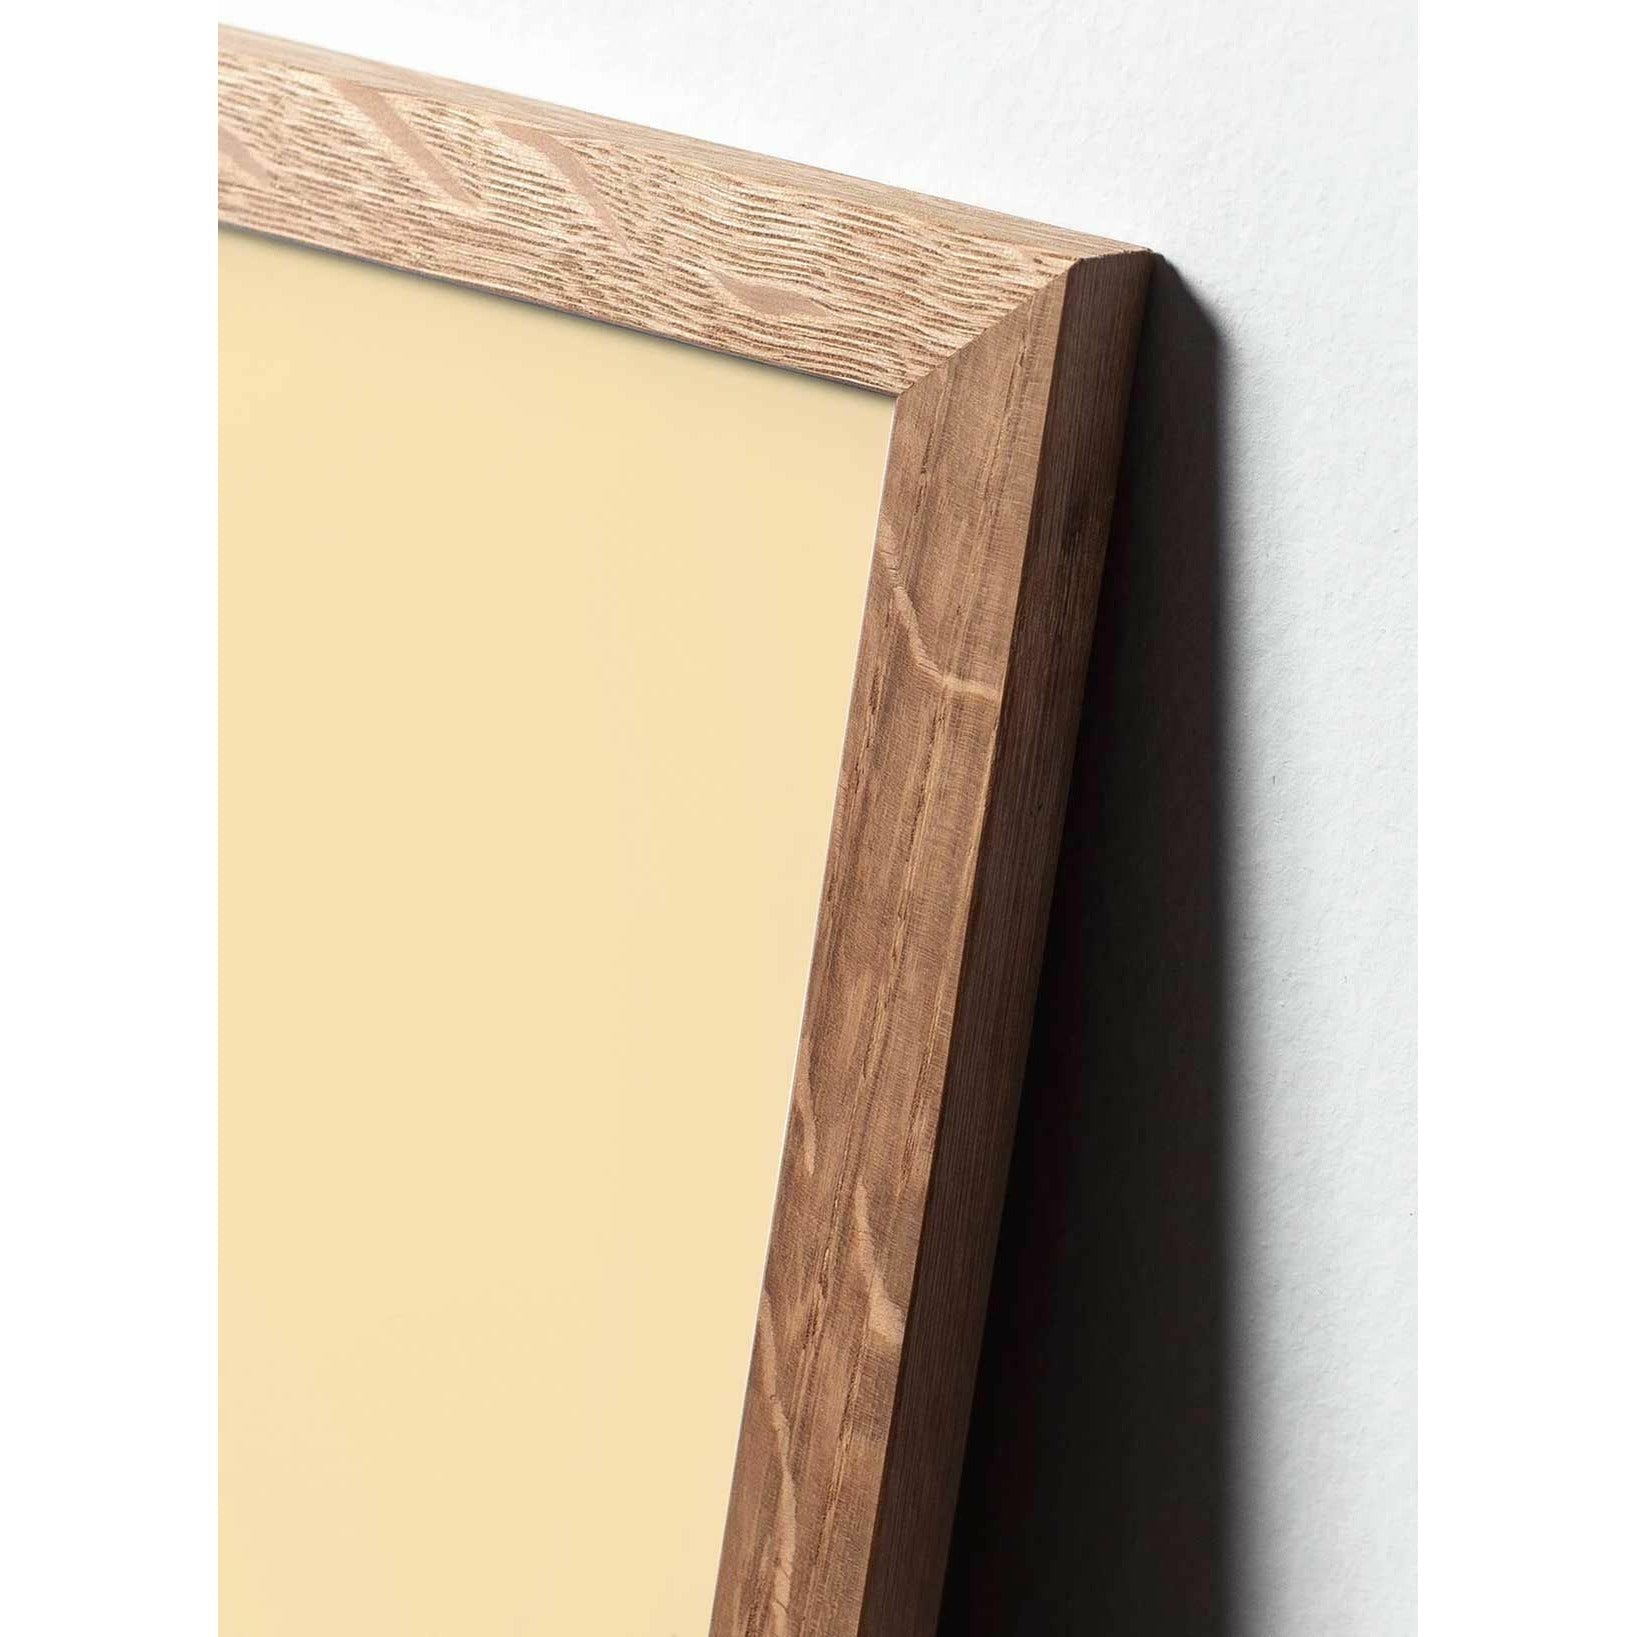 Plakát s labutí linií, rám vyrobený z lehkého dřeva 70 x100 cm, bílé pozadí